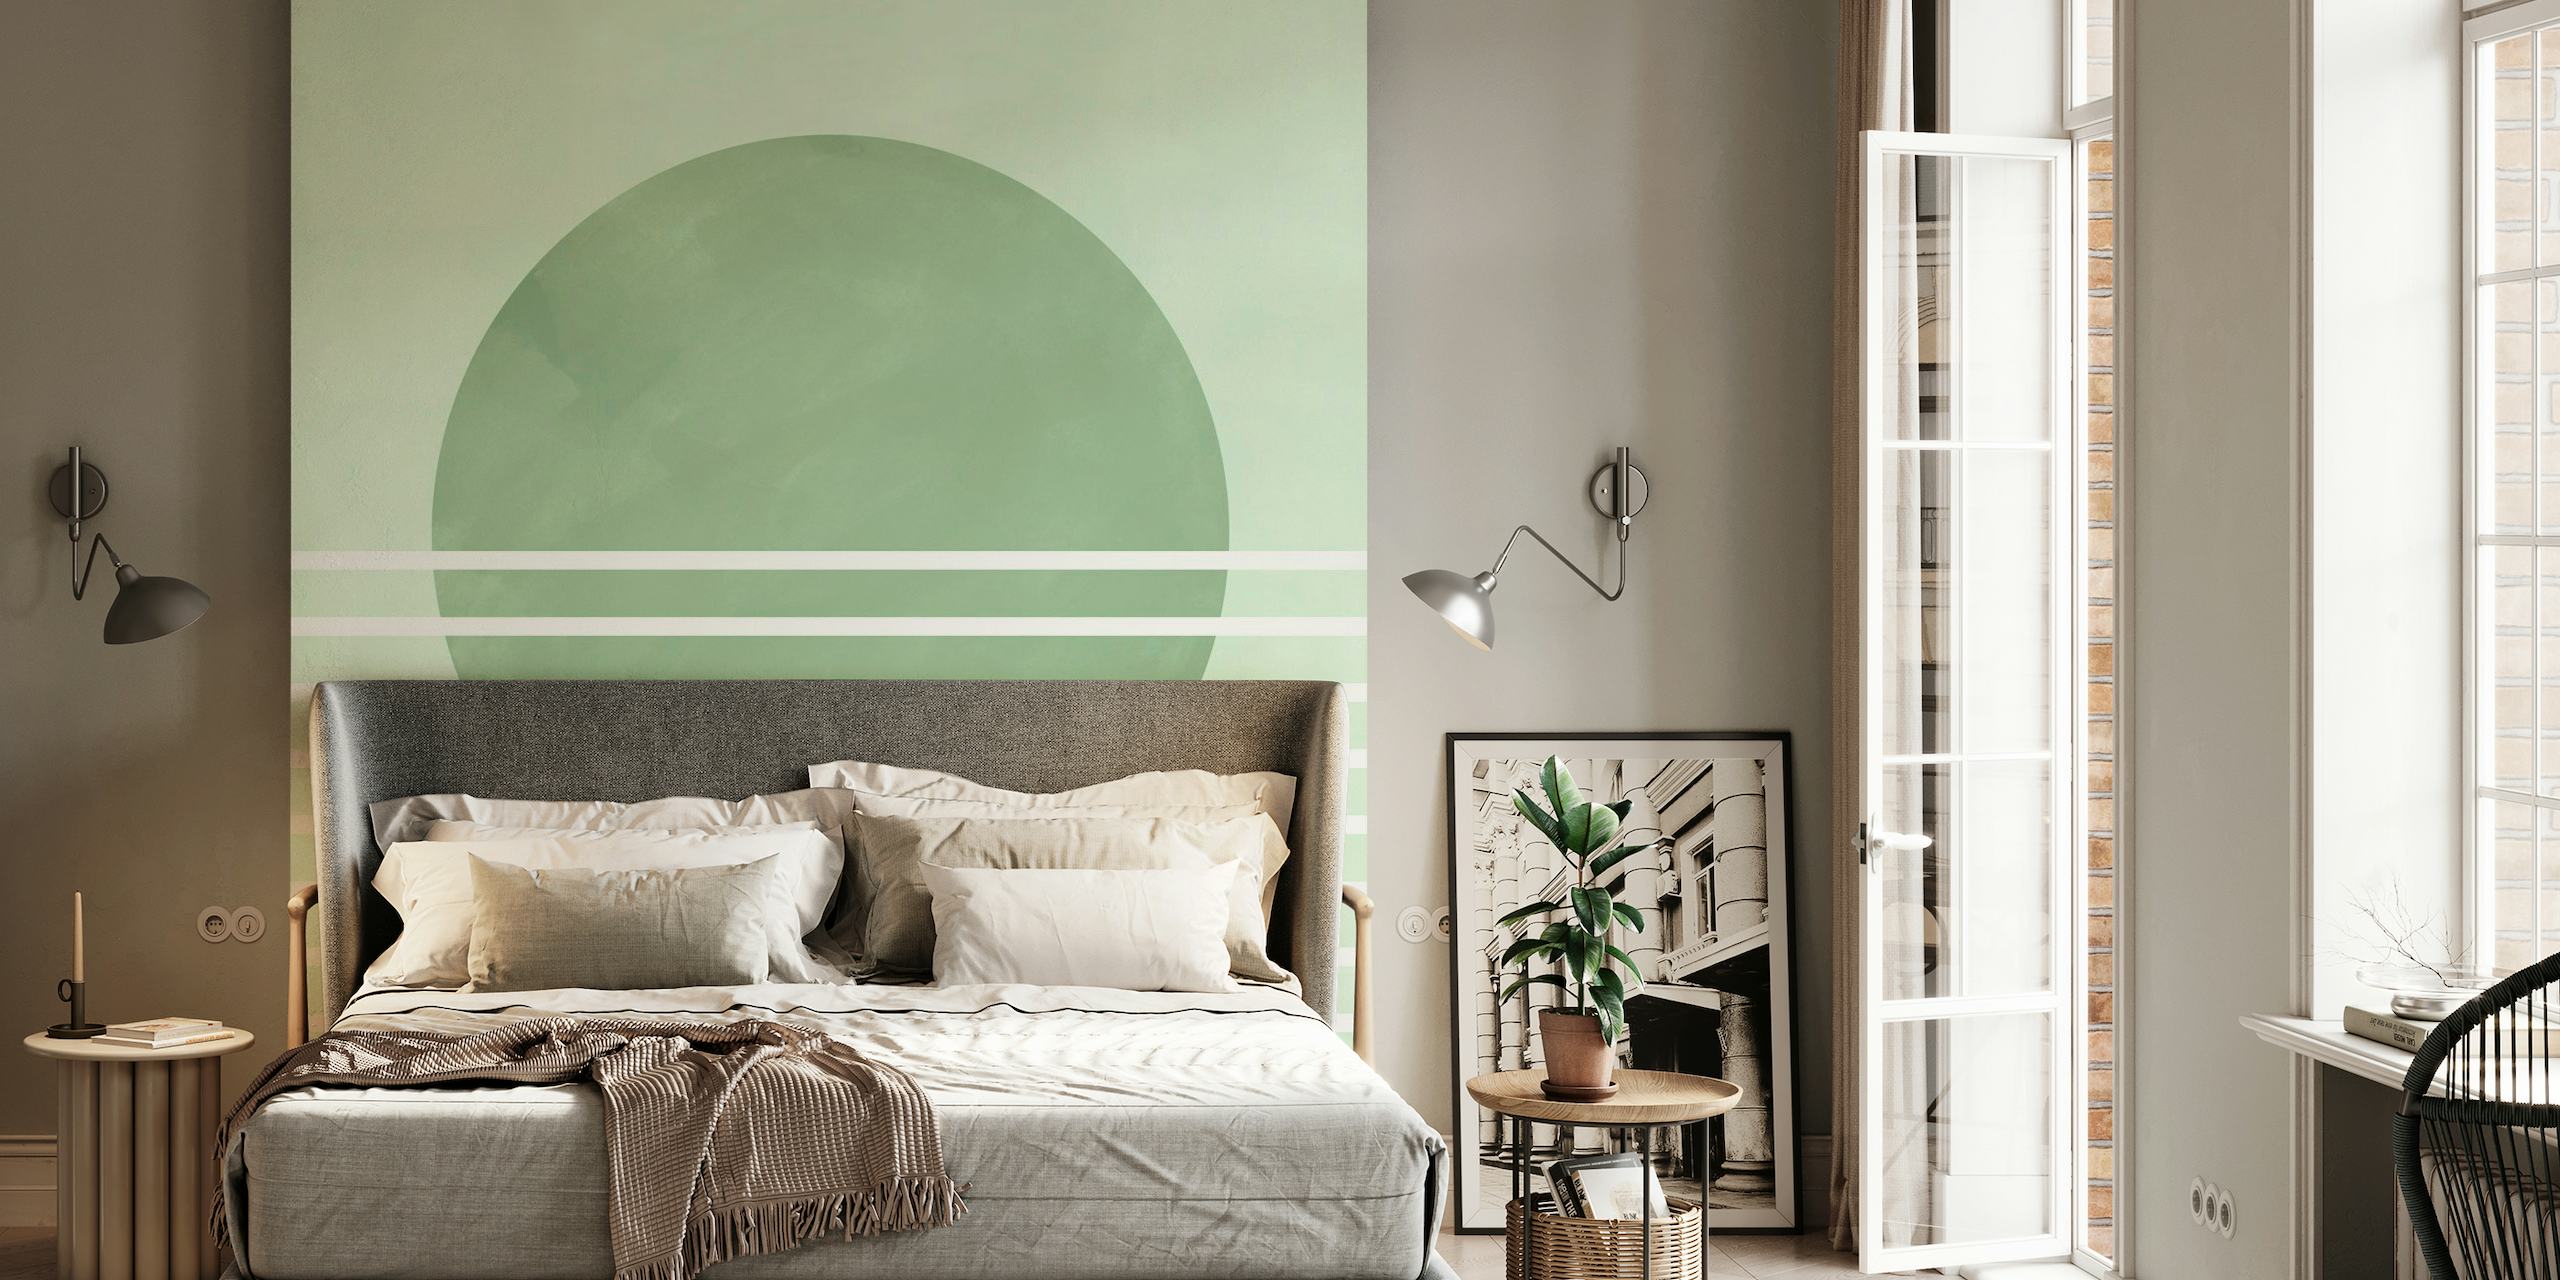 Fotomural abstracto con un círculo verde suave y rayas horizontales